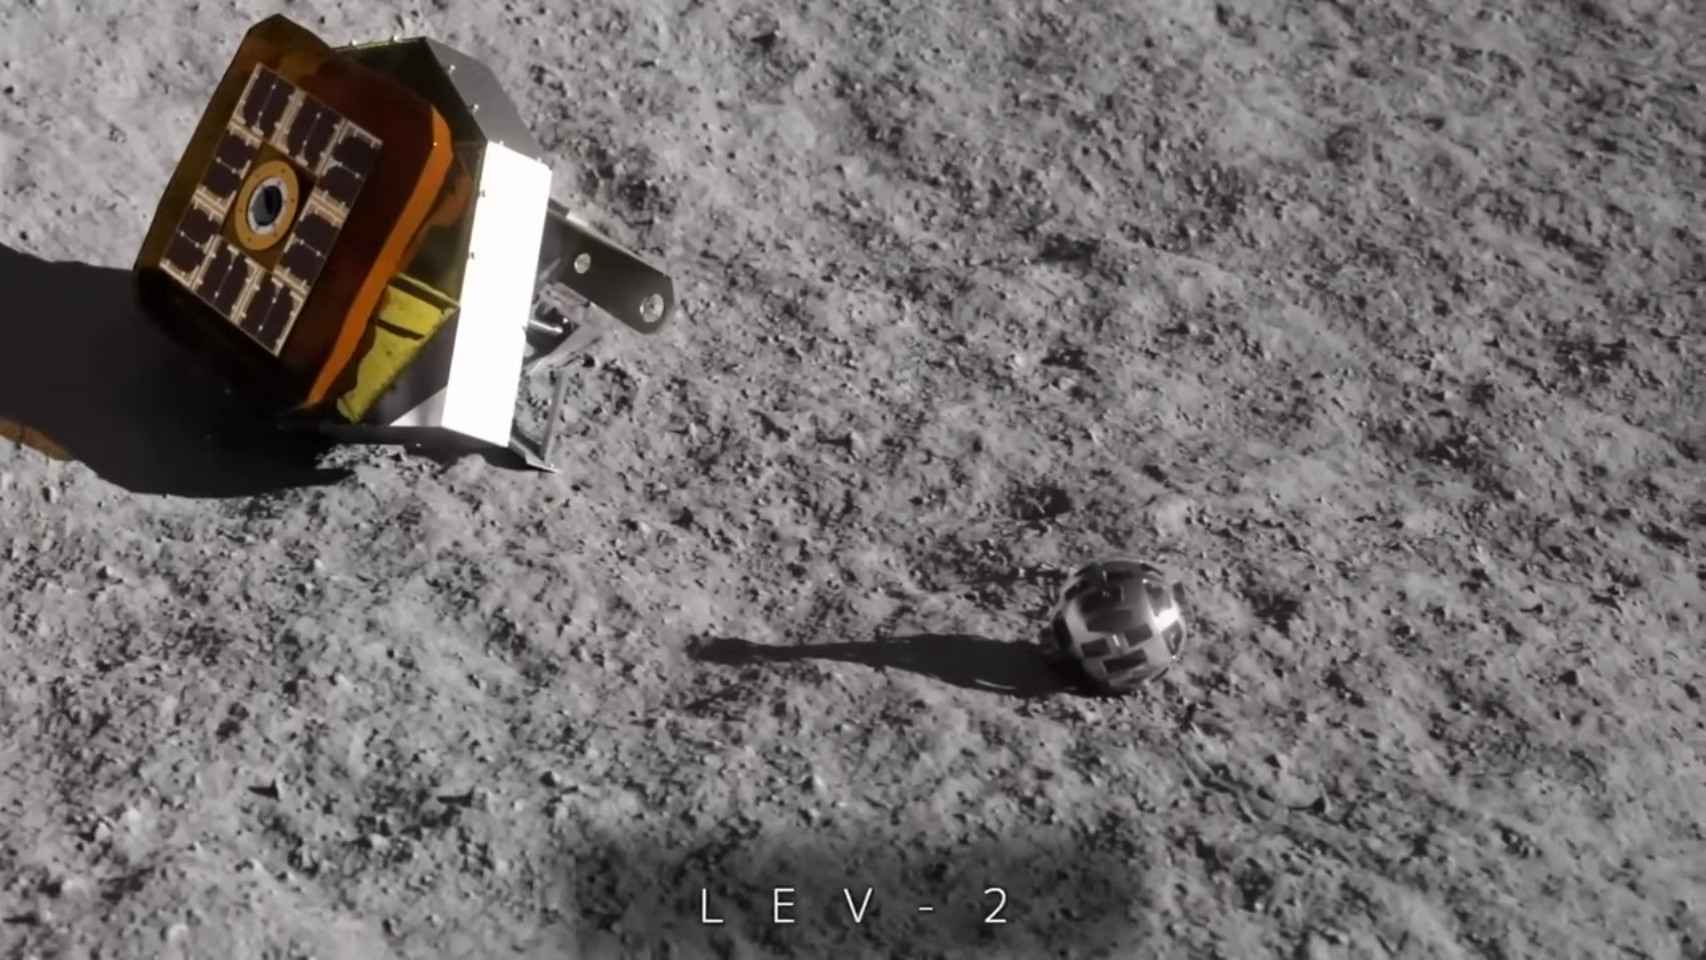 El diminuto rover LEV-2